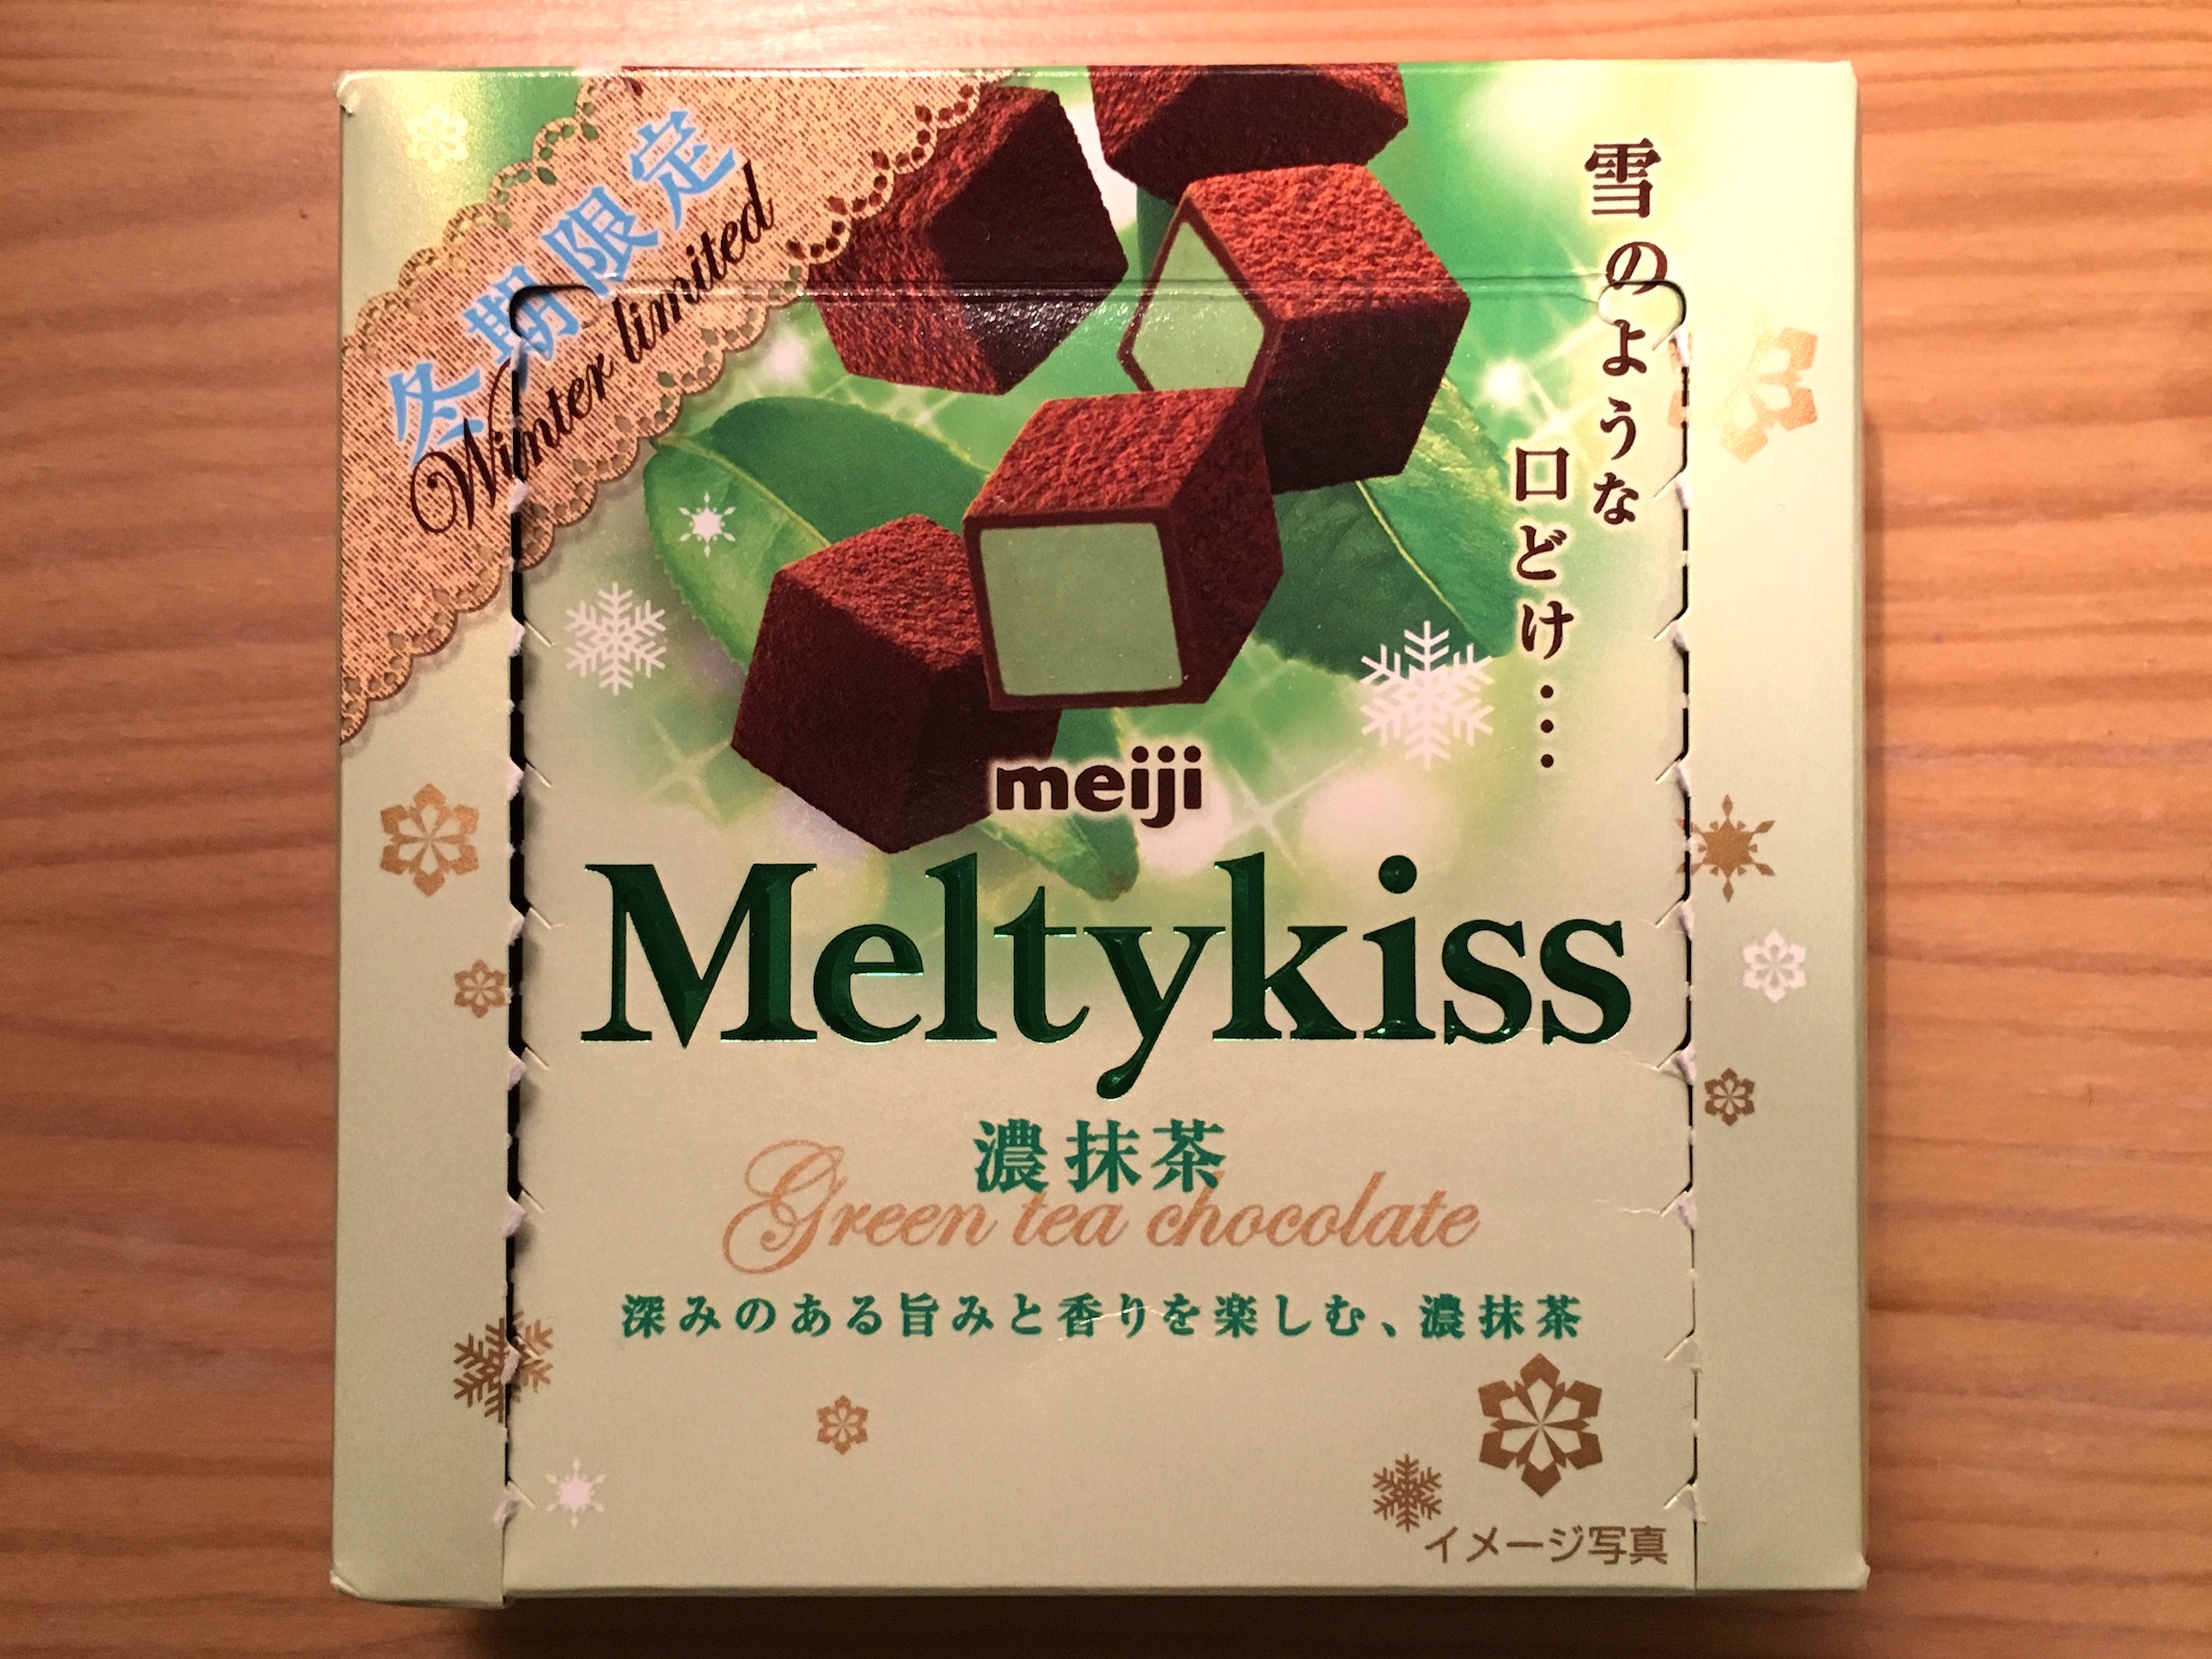 Meltykiss the vert 1